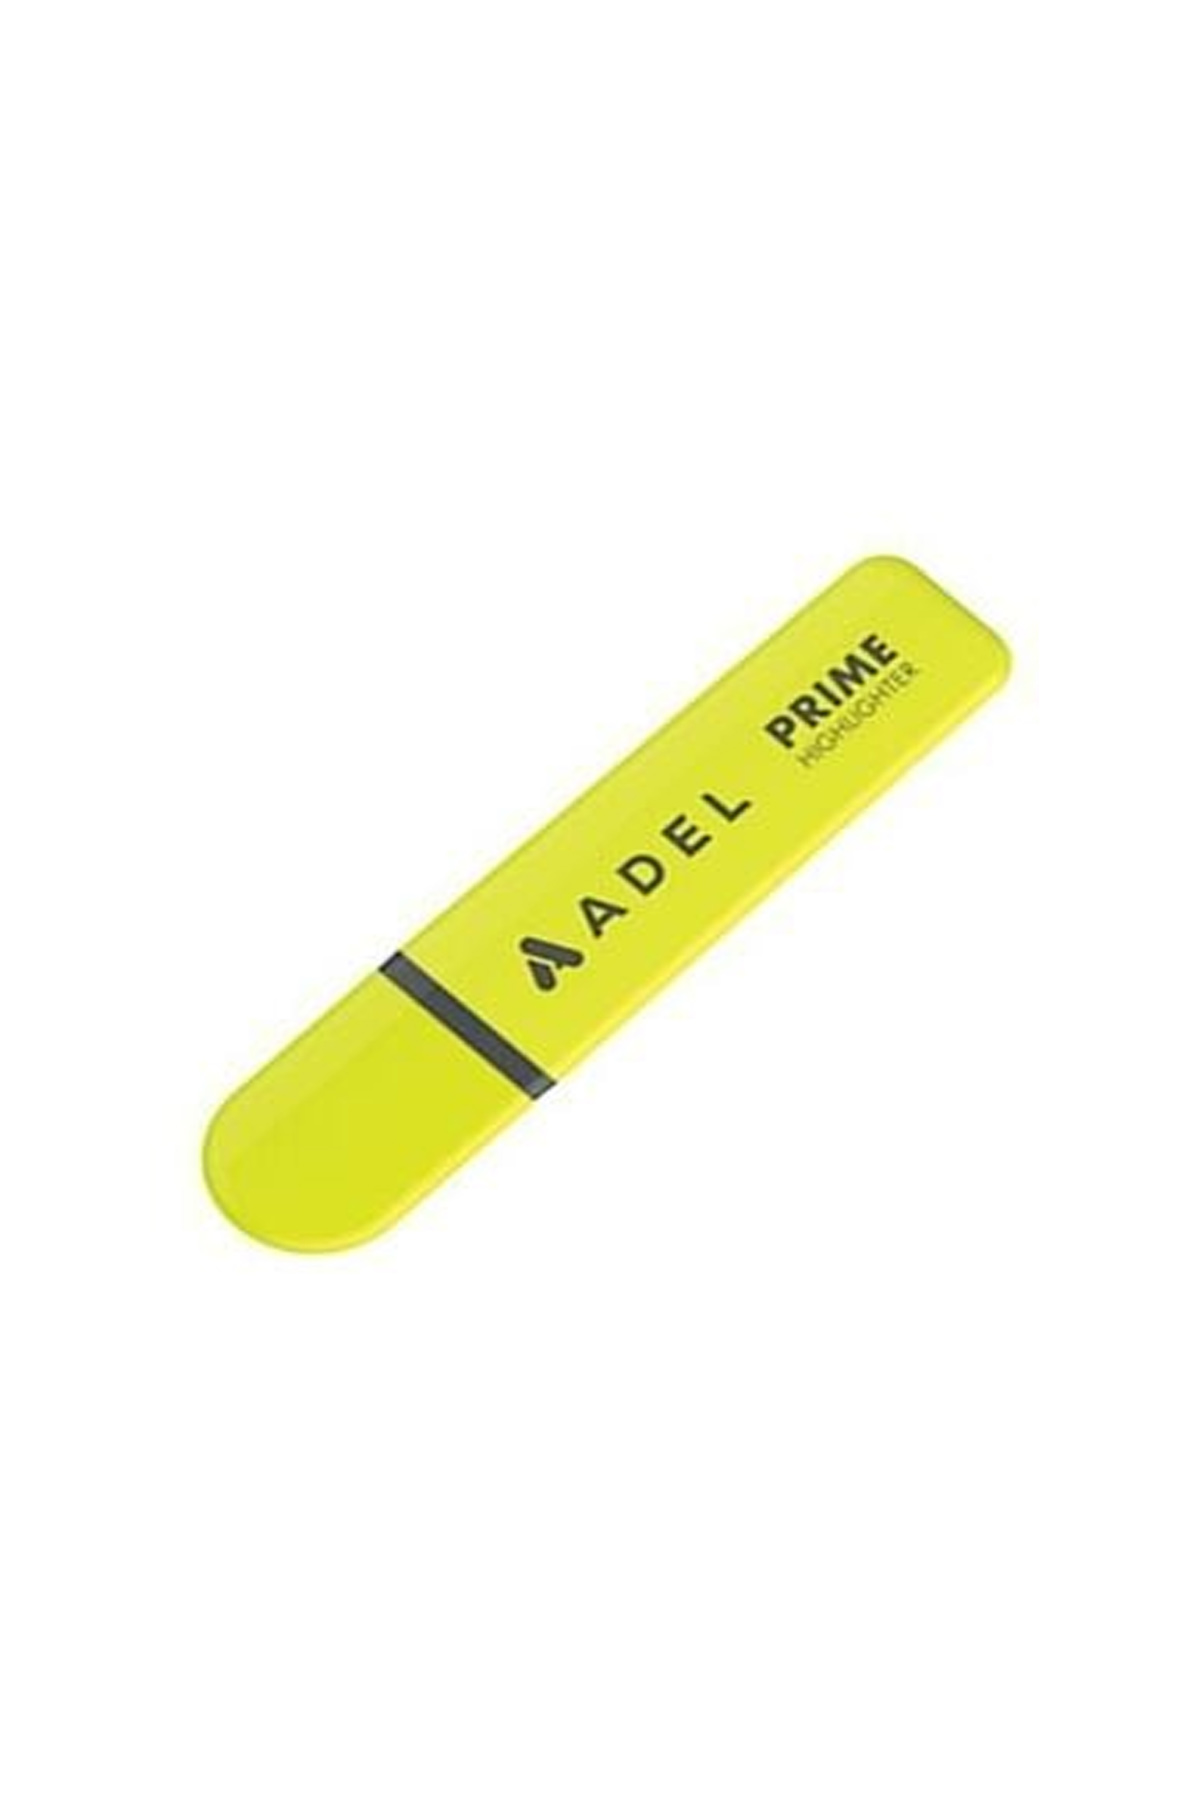 Adel Prime Fosforlu Kalem, Sarı